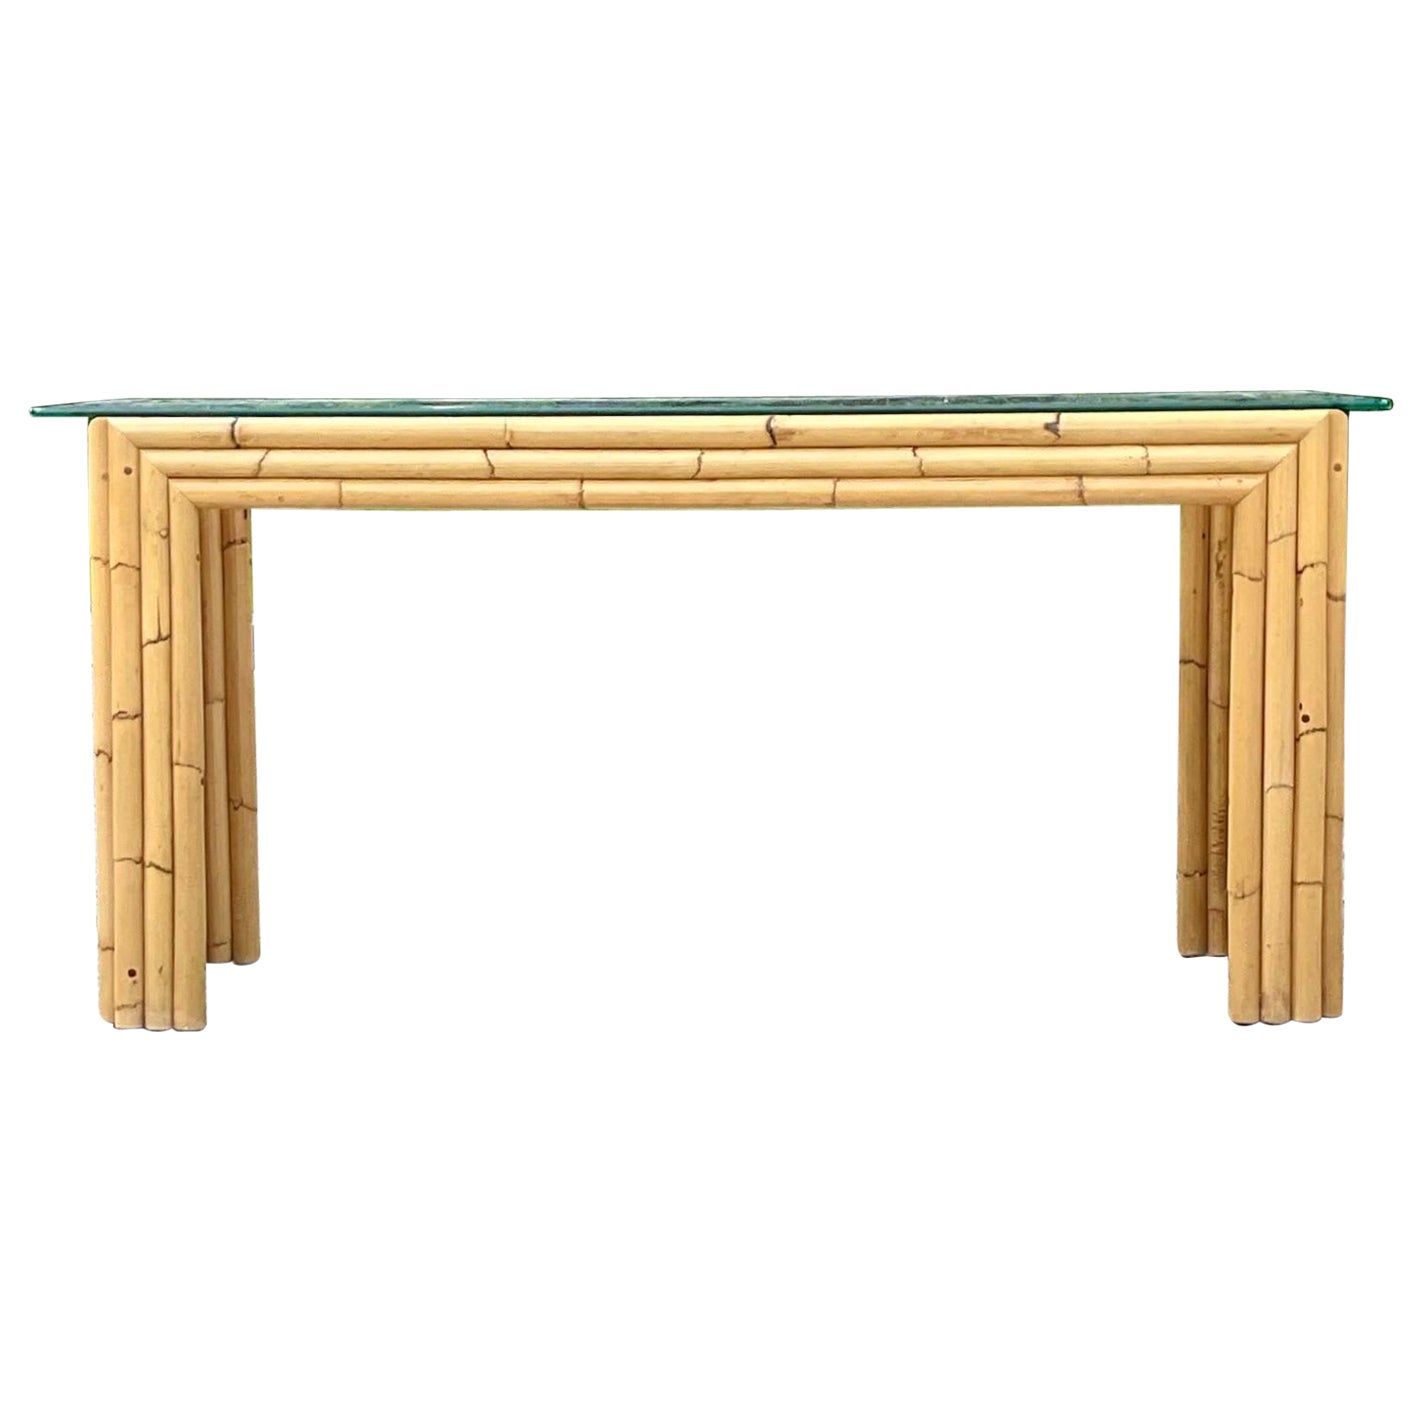 Table console en bambou empilé de style côtier de la fin du 20e siècle